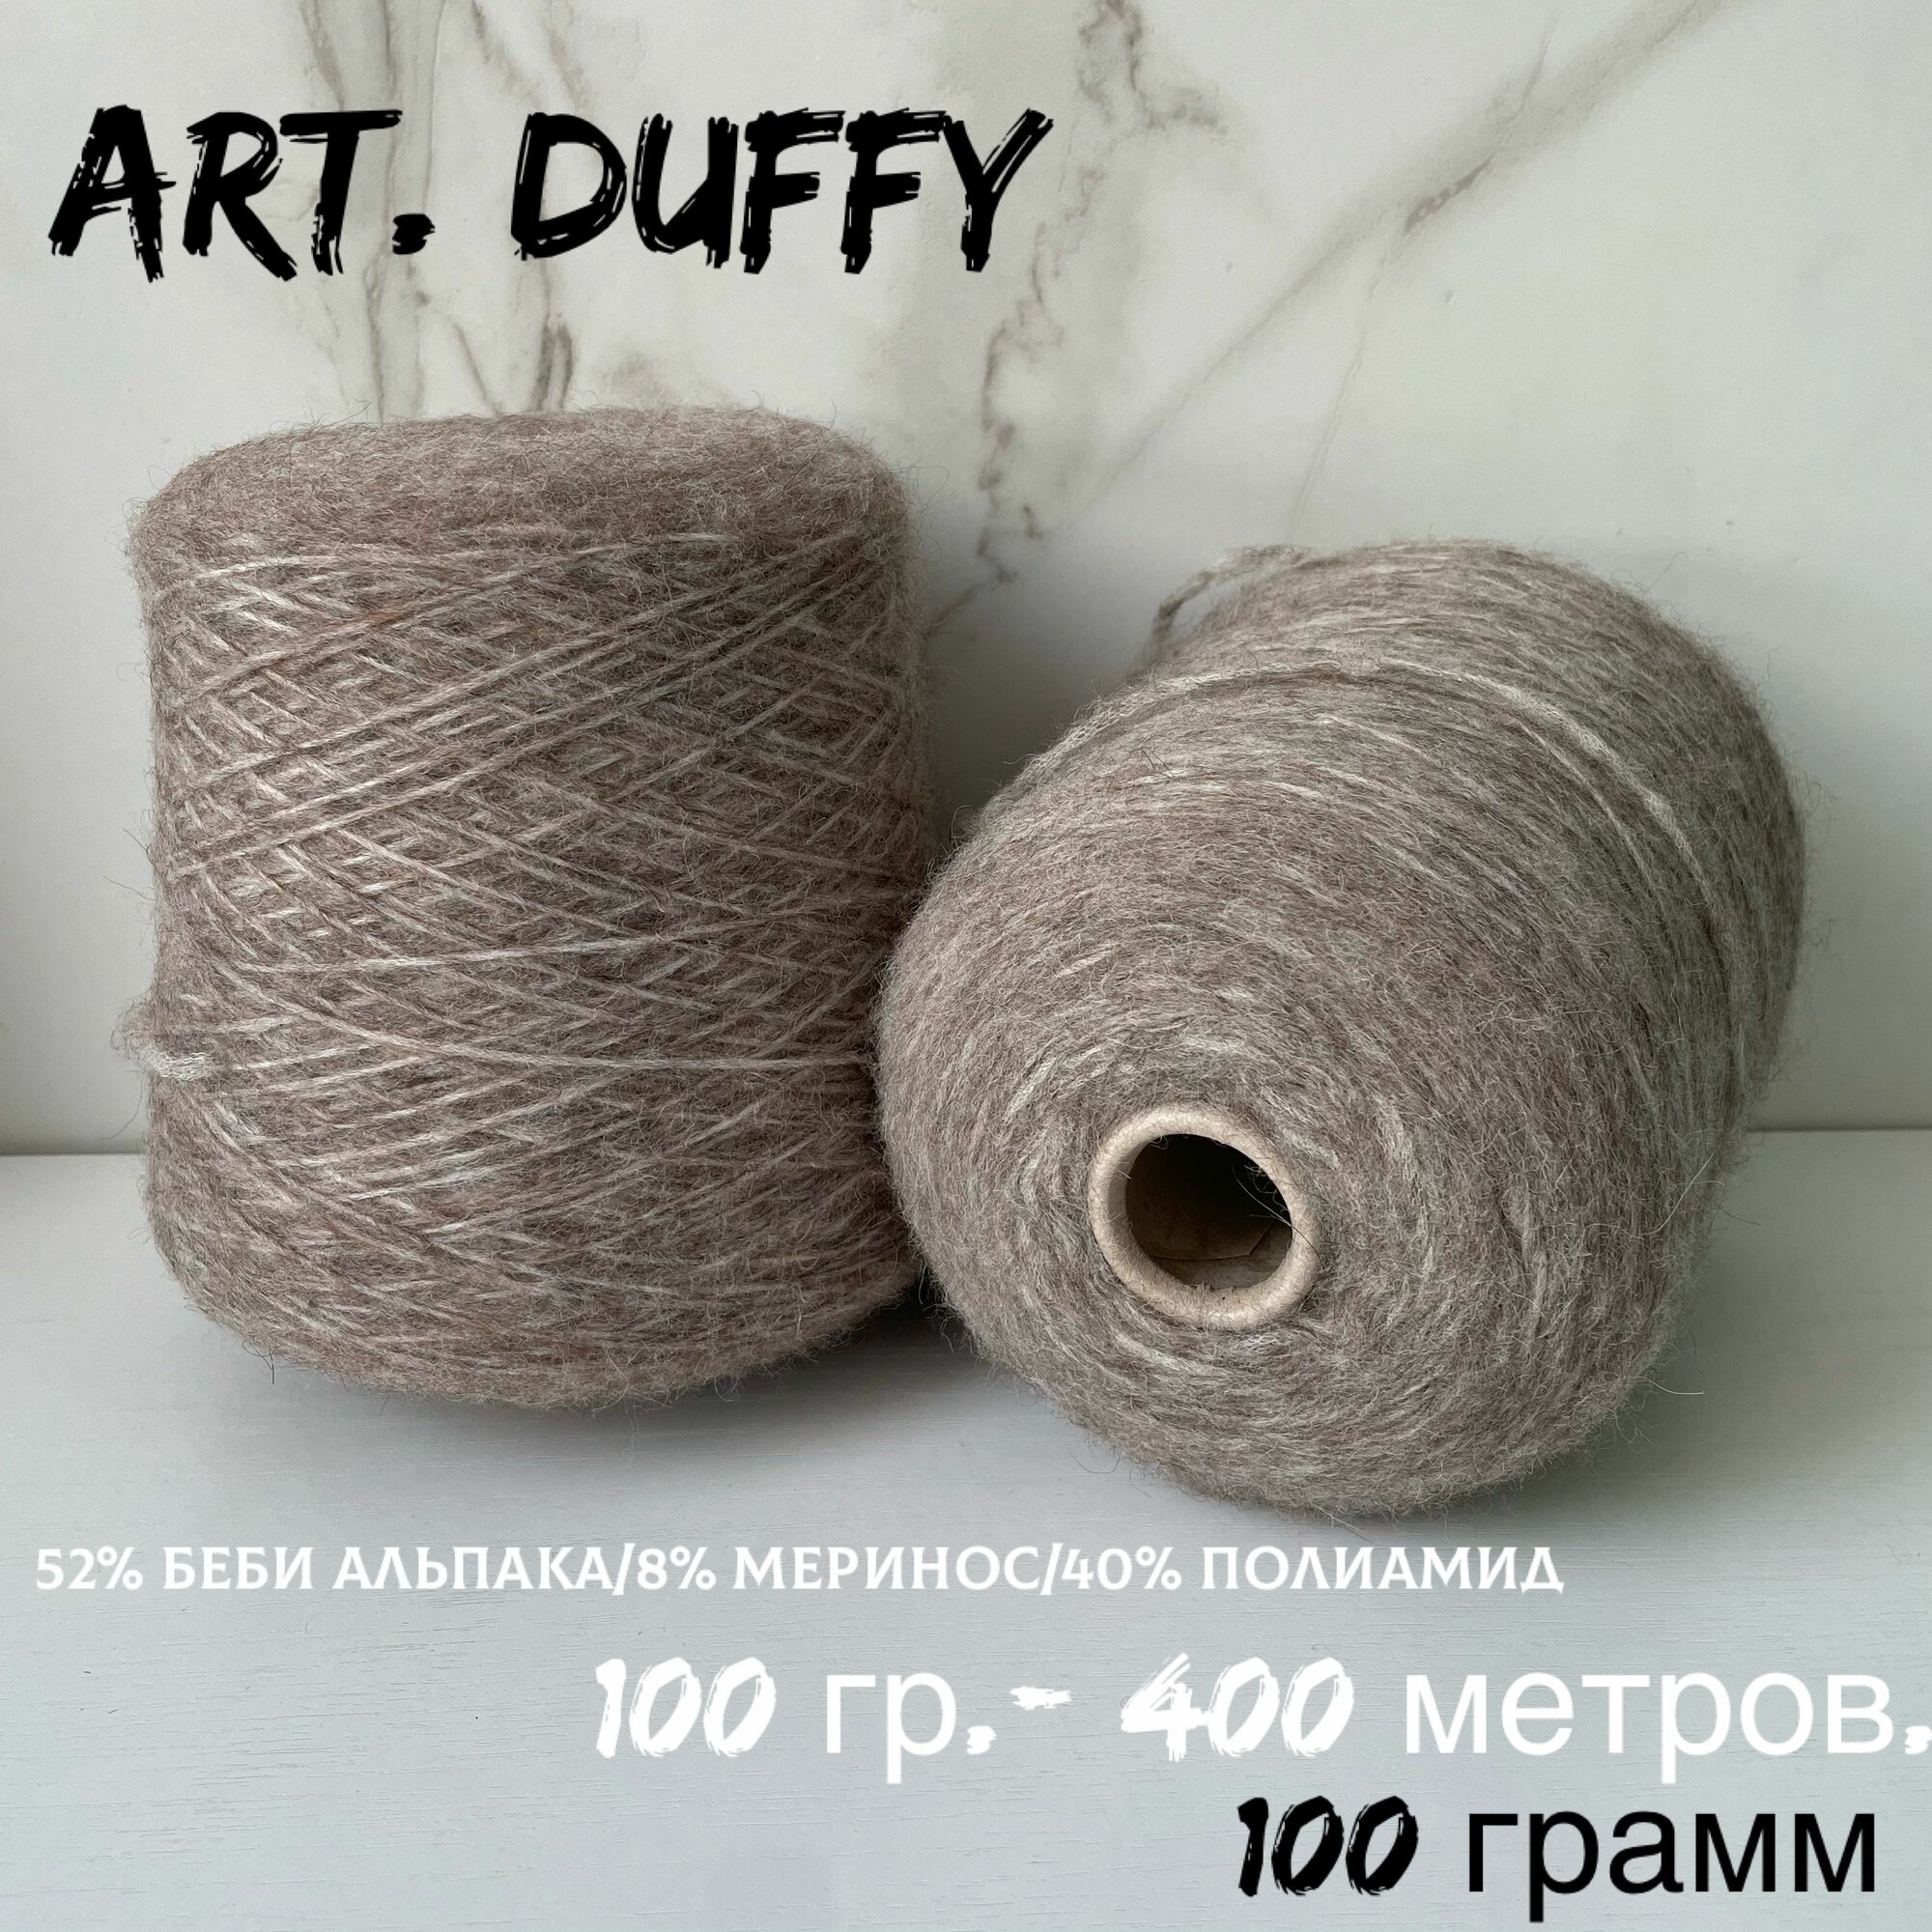 Итальянская бобинная пряжа для вязания, беби альпака art. DUFFY шнурковая пряжа с альпака, 100 грамм